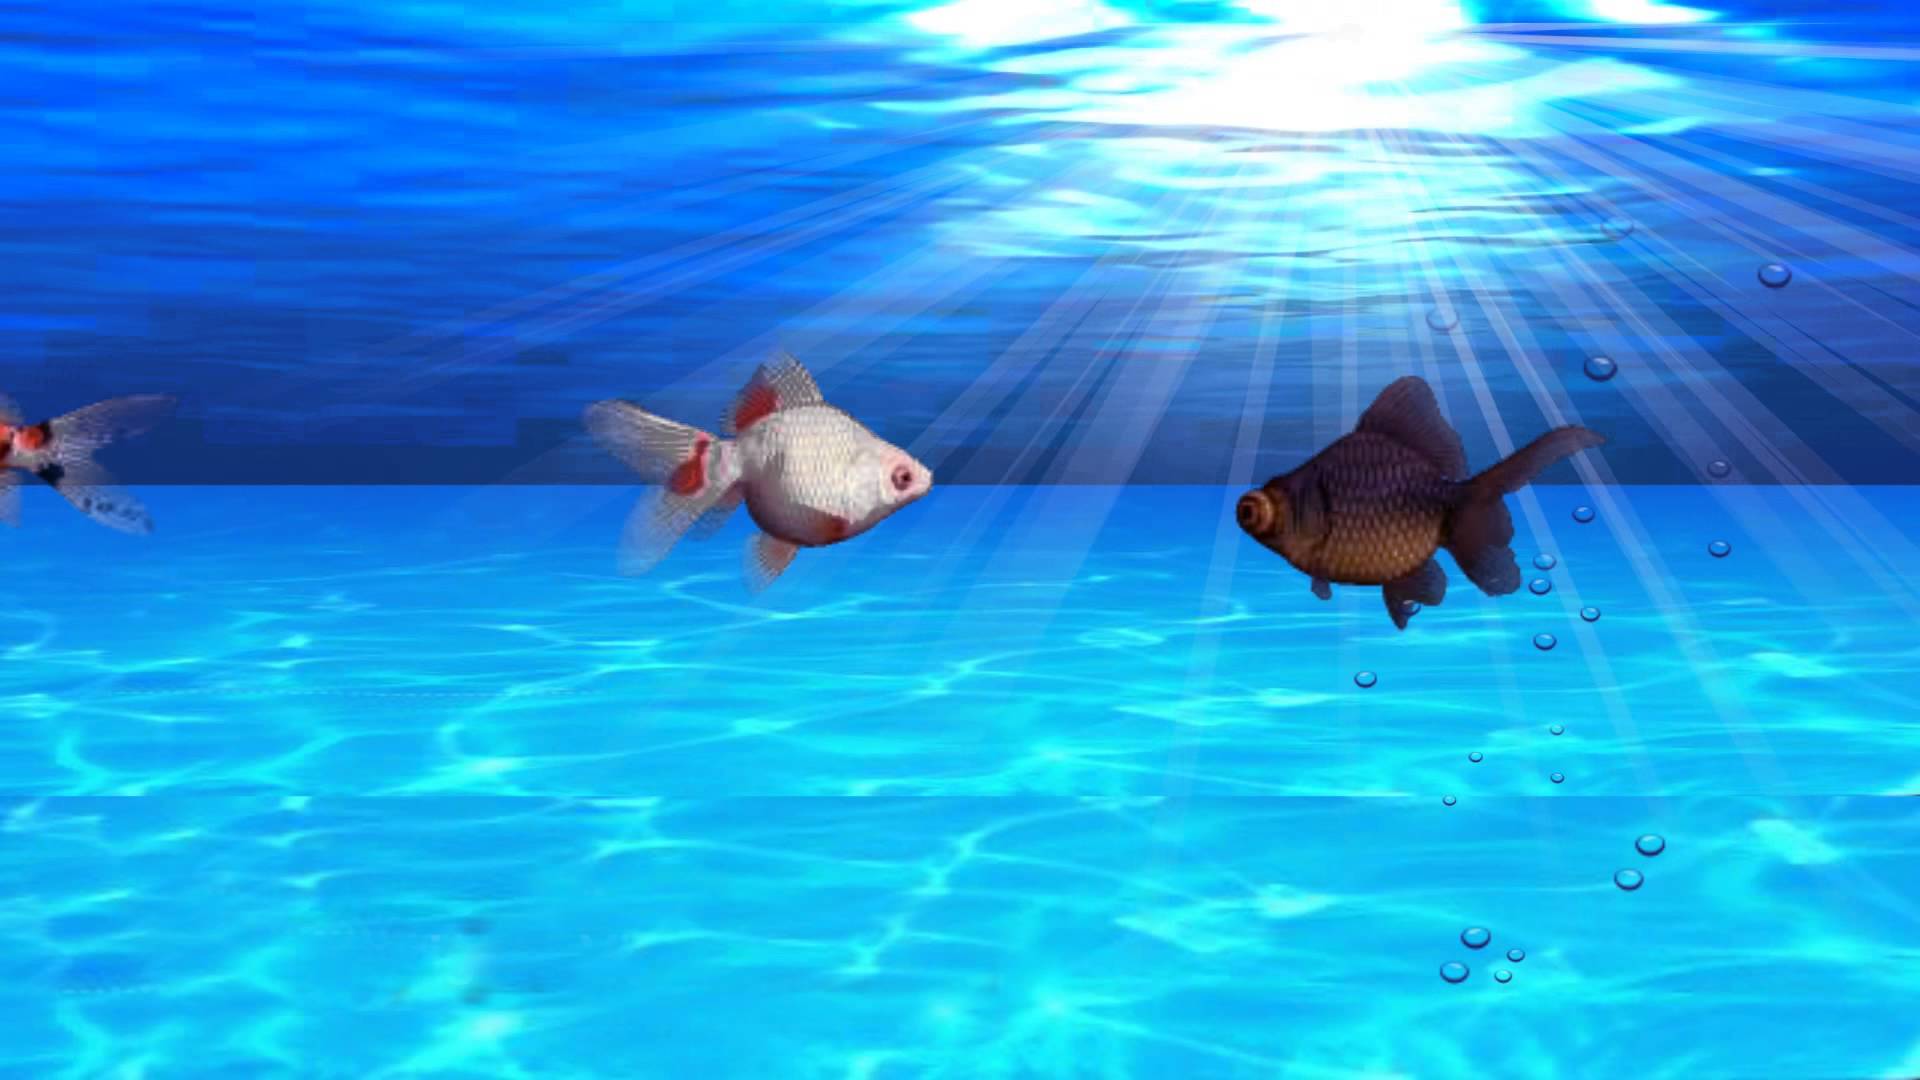 Fish Aquarium Video Background - YouTube